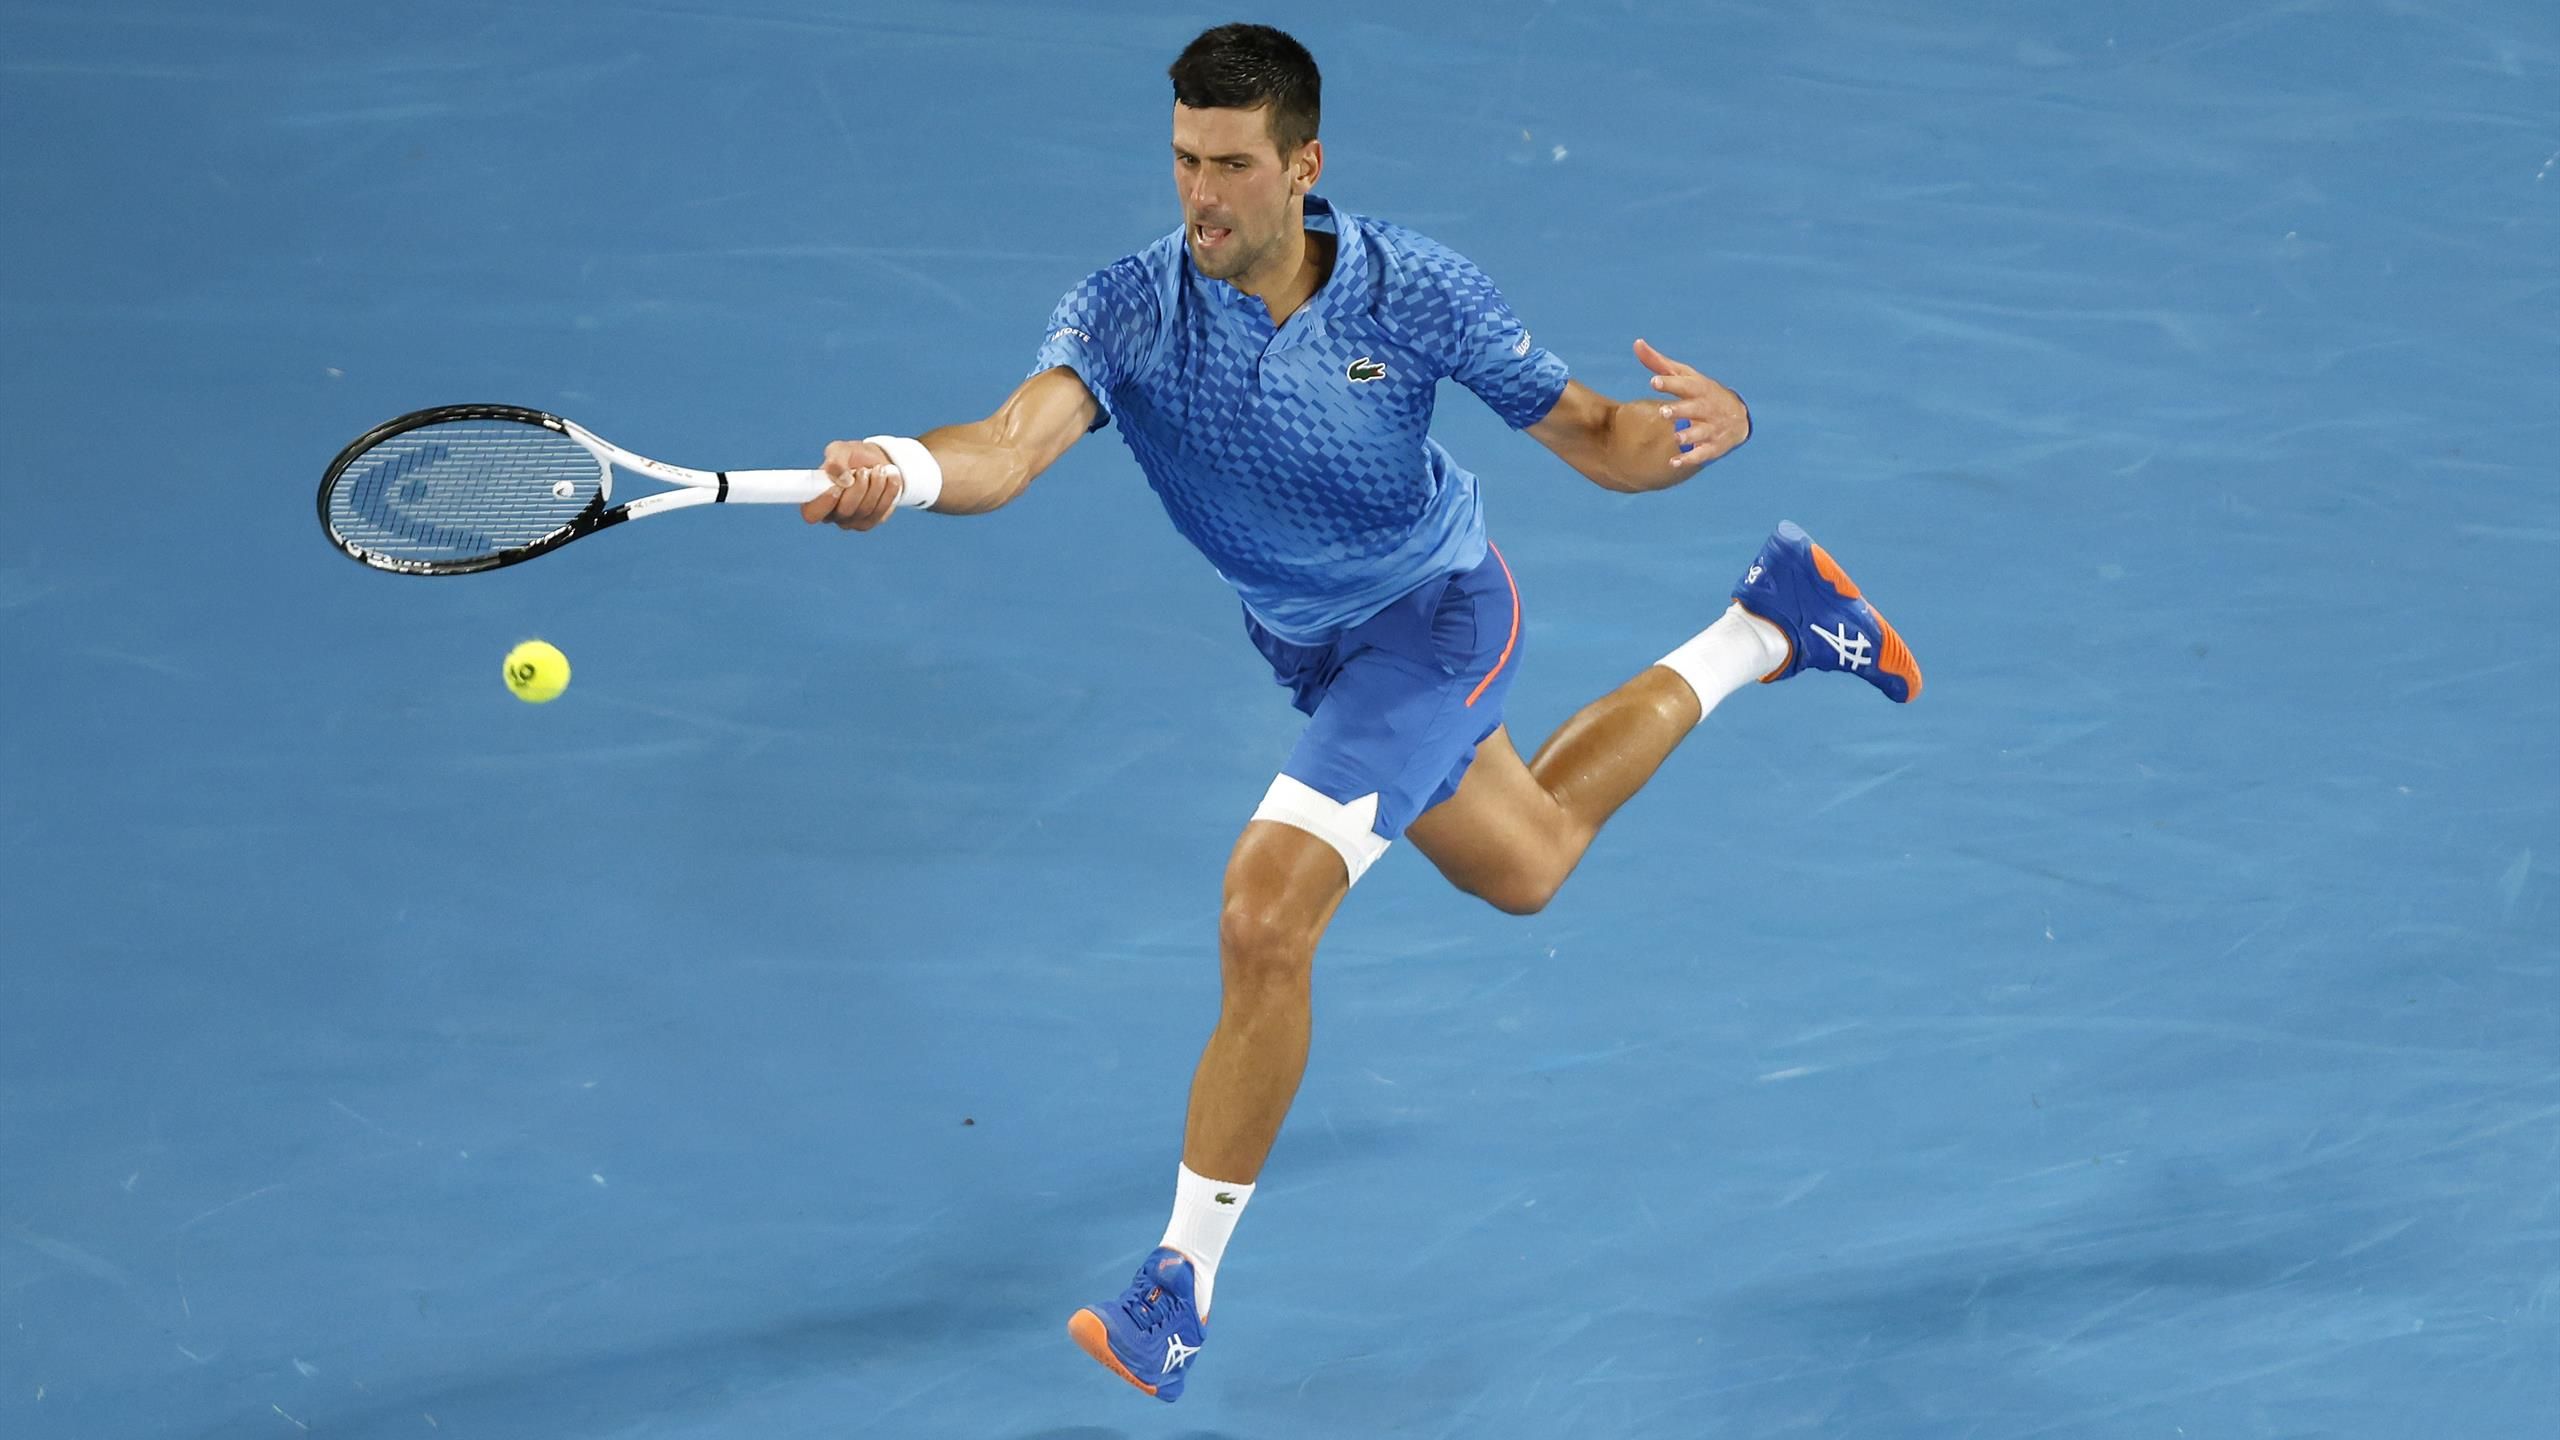 Australian Open Übertragung Herren-Finale Djokovic - Tsitsipas heute live im TV und im Livestream